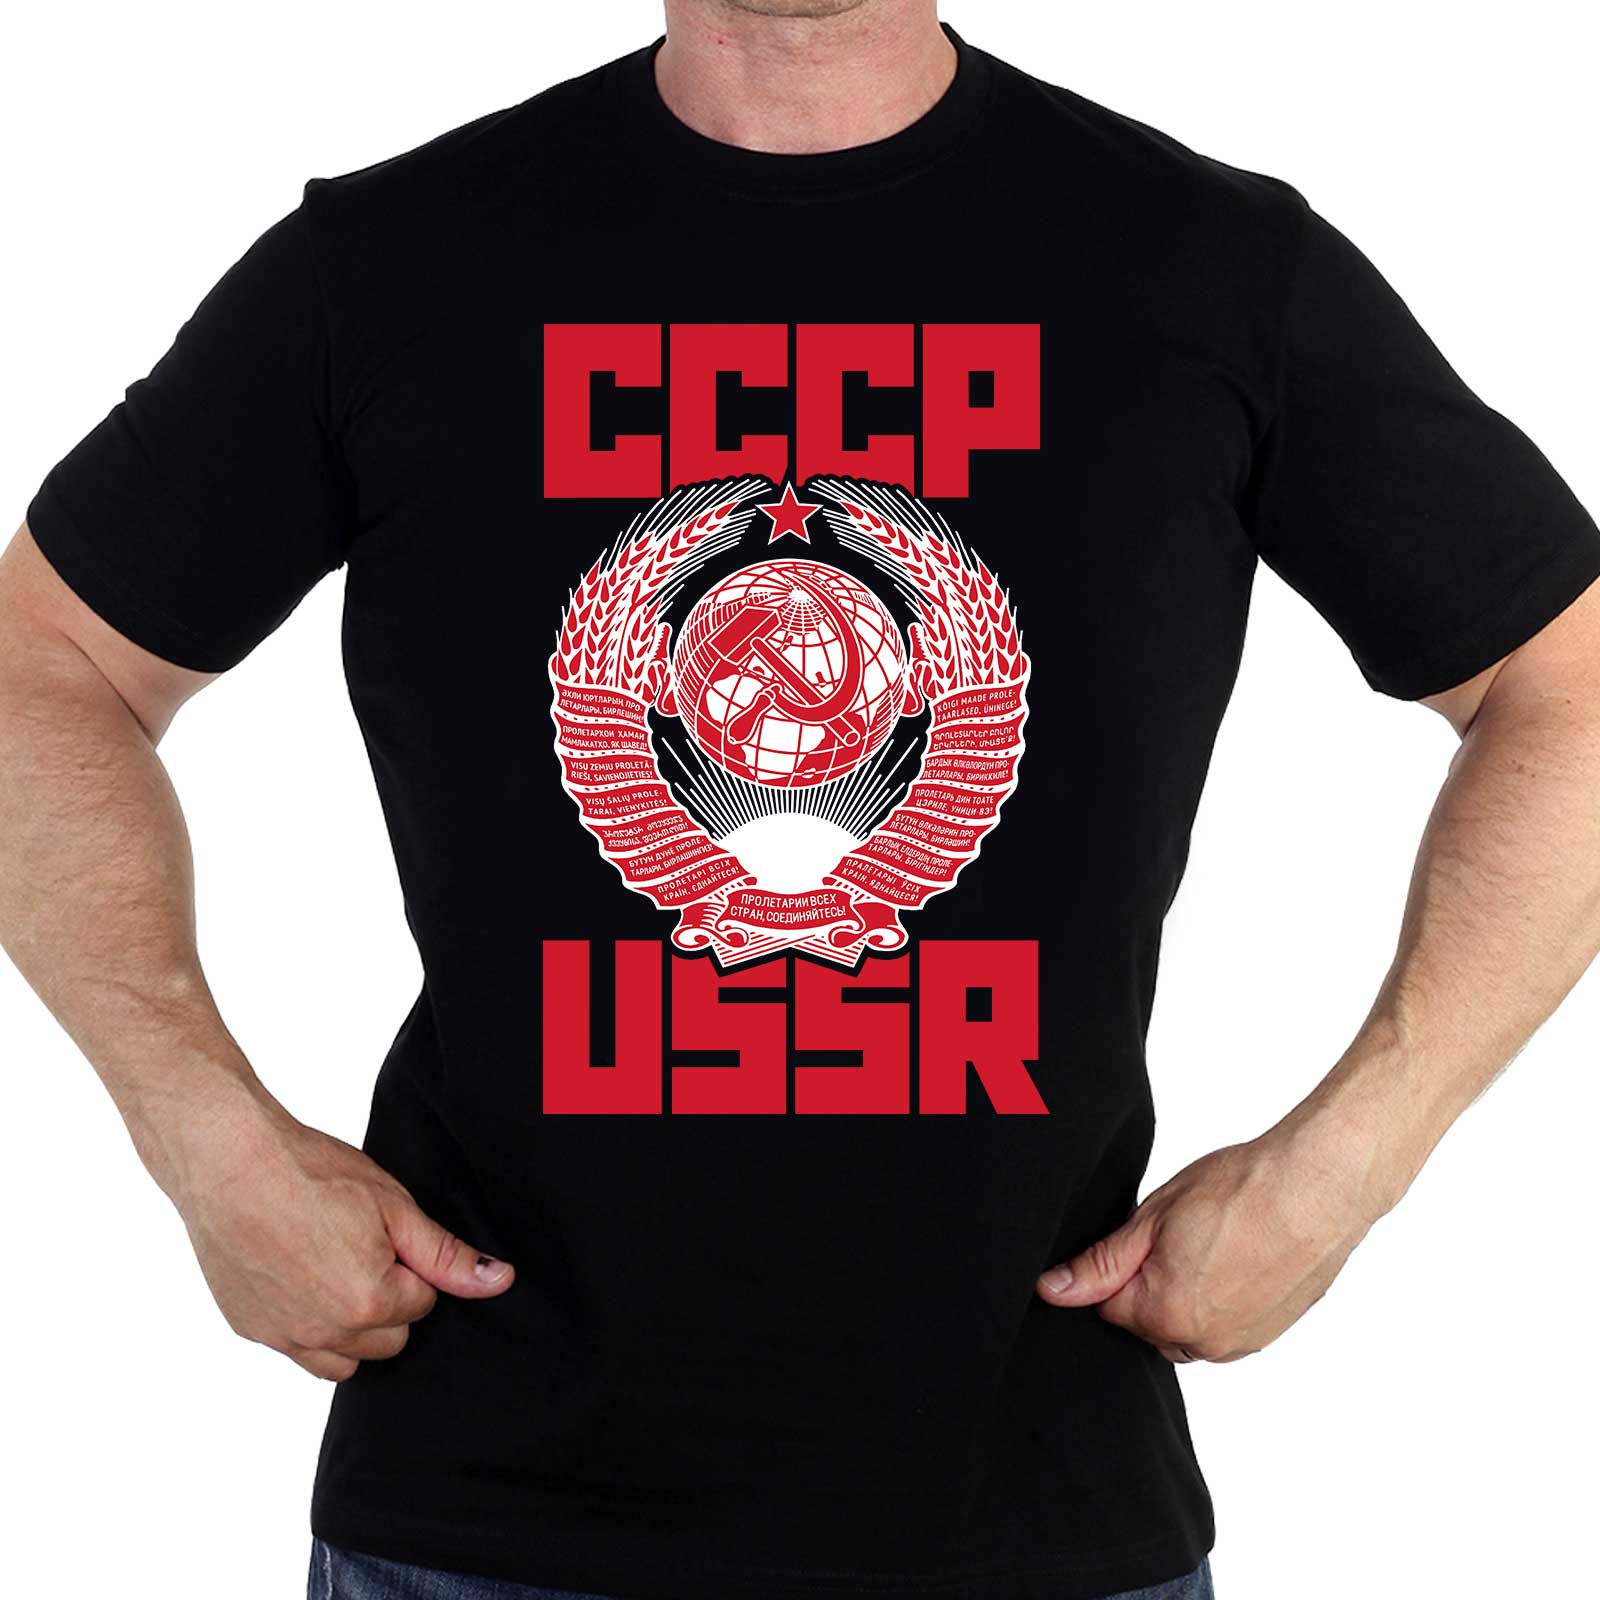 Купить футболку "USSR" с гербом СССР